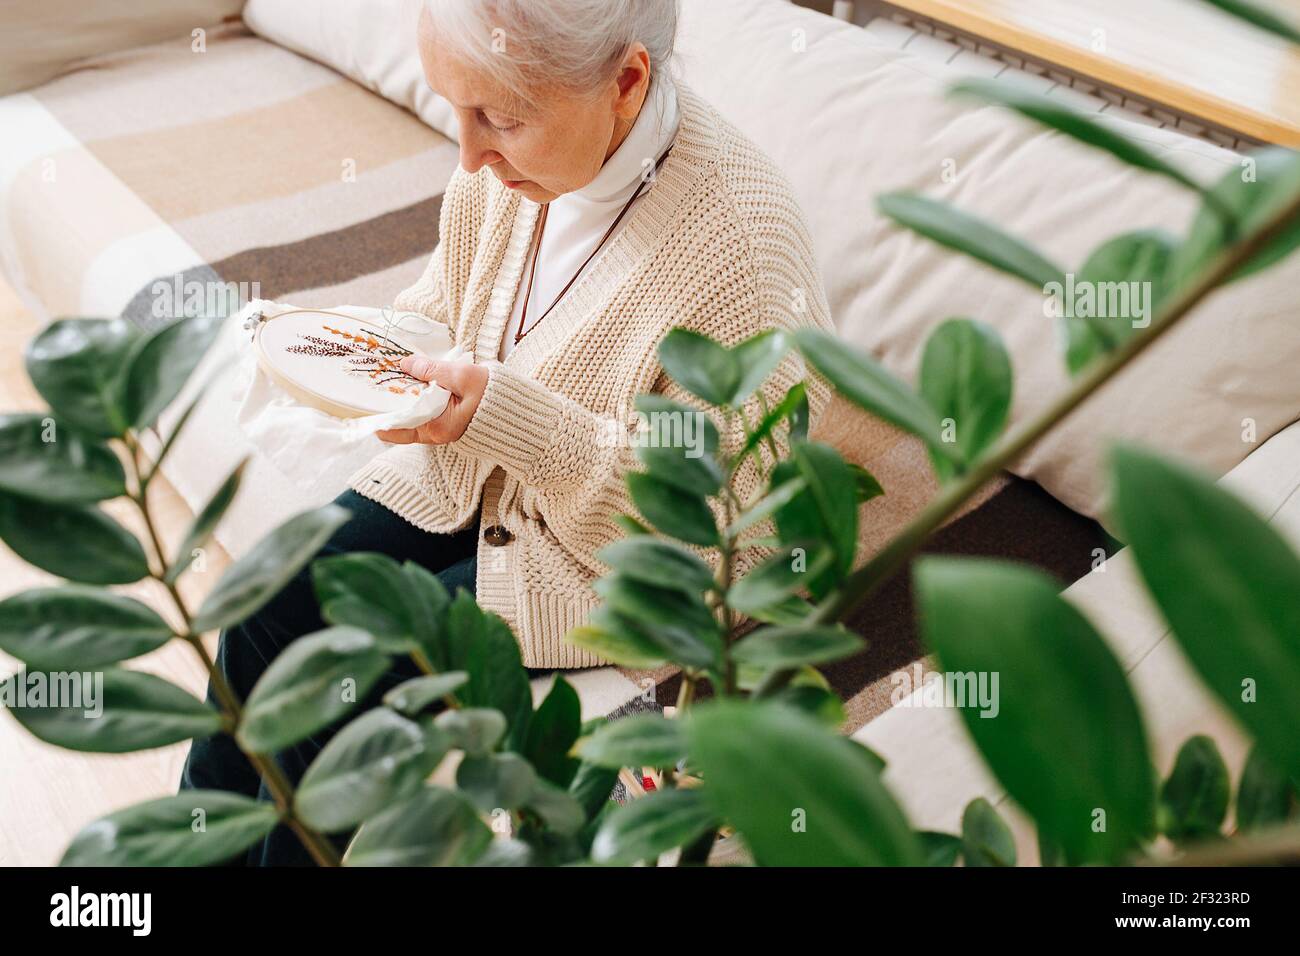 Grande granny assise sur un canapé à la maison, regardant de près la boucle de broderie avec une image. Tiré à travers les branches de l'usine. Banque D'Images